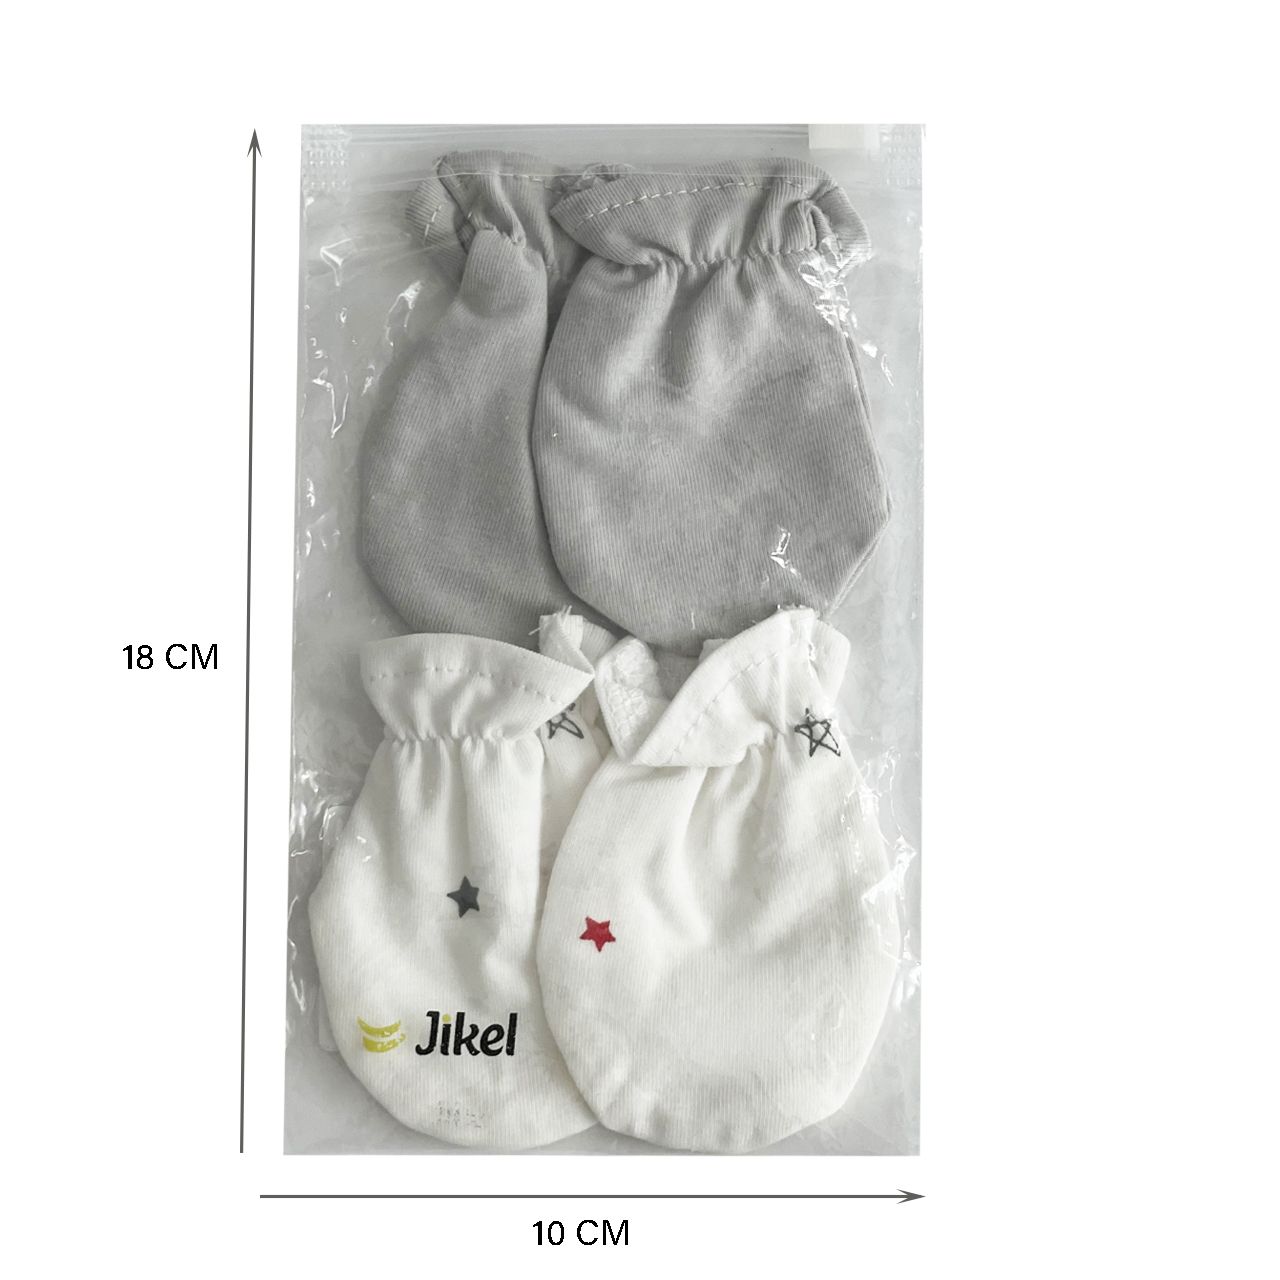 دستکش نوزادی جیکل مدل Jk902511-92بسته 2 عددی -  - 3